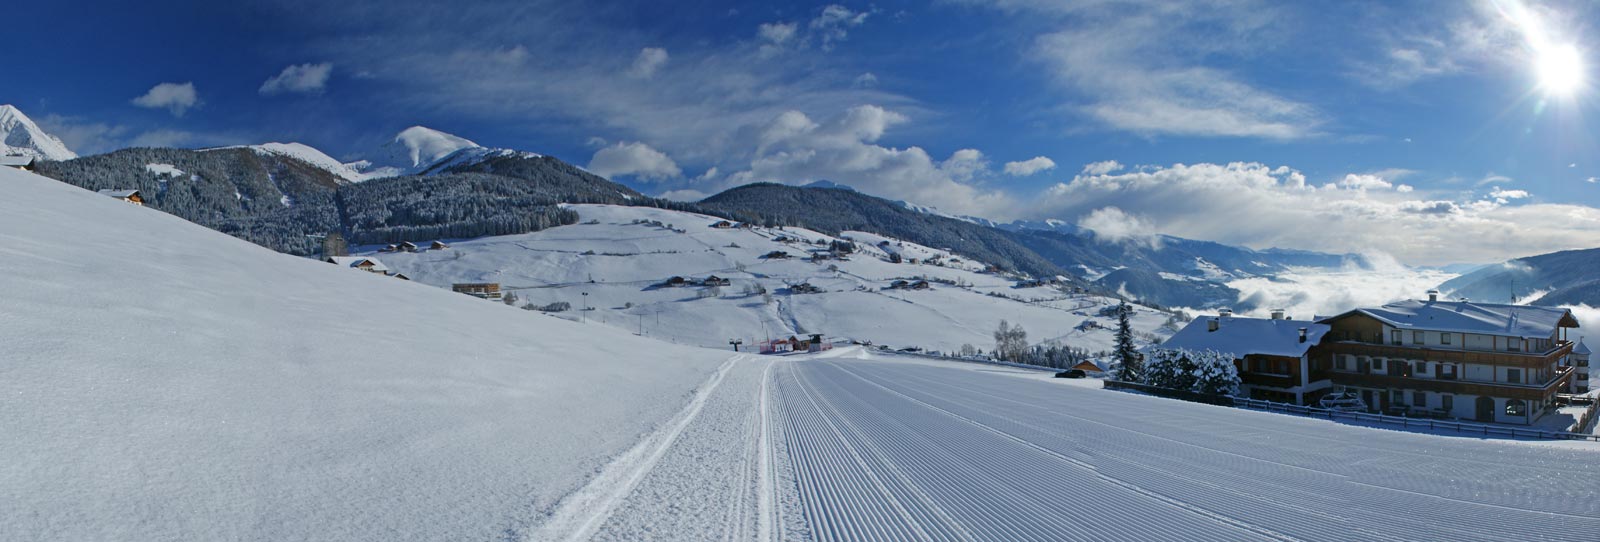 Skiing fun in the surrounding area